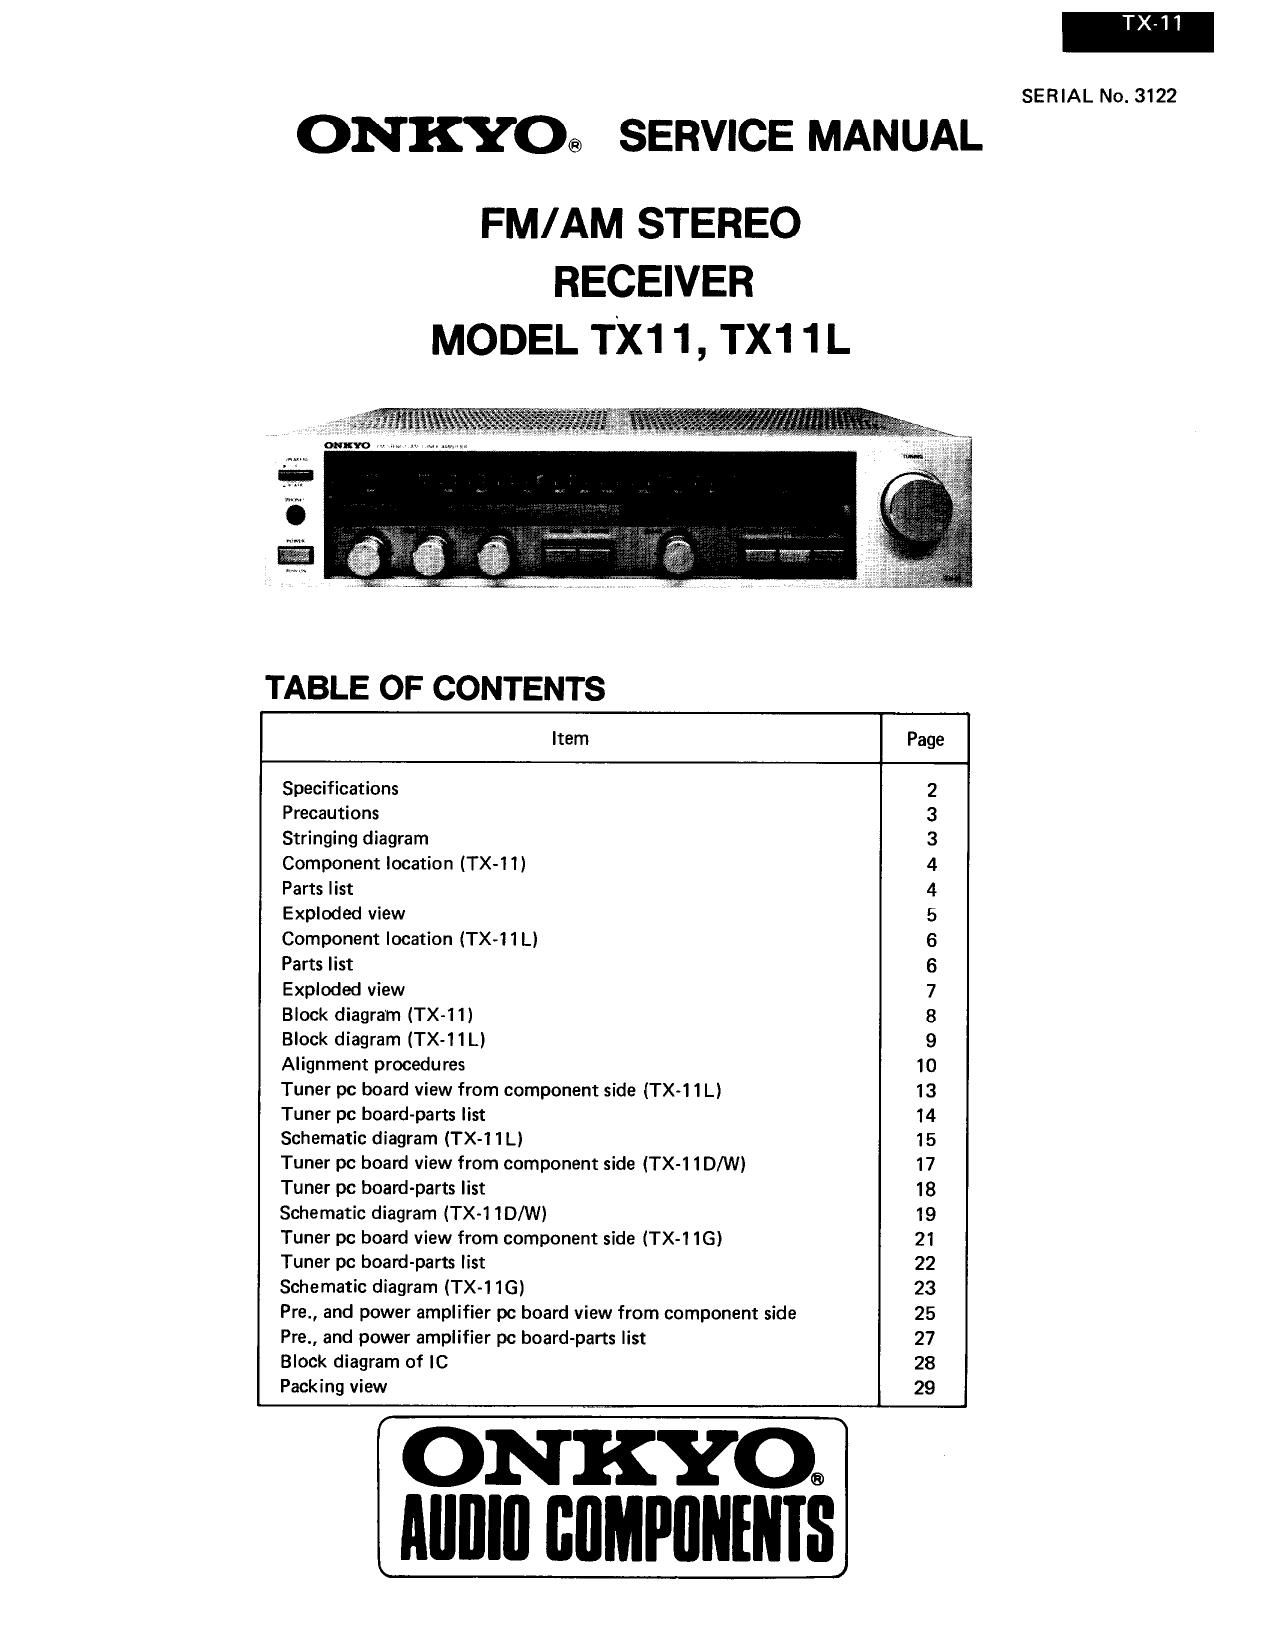 Onkyo TX 11 Service Manual